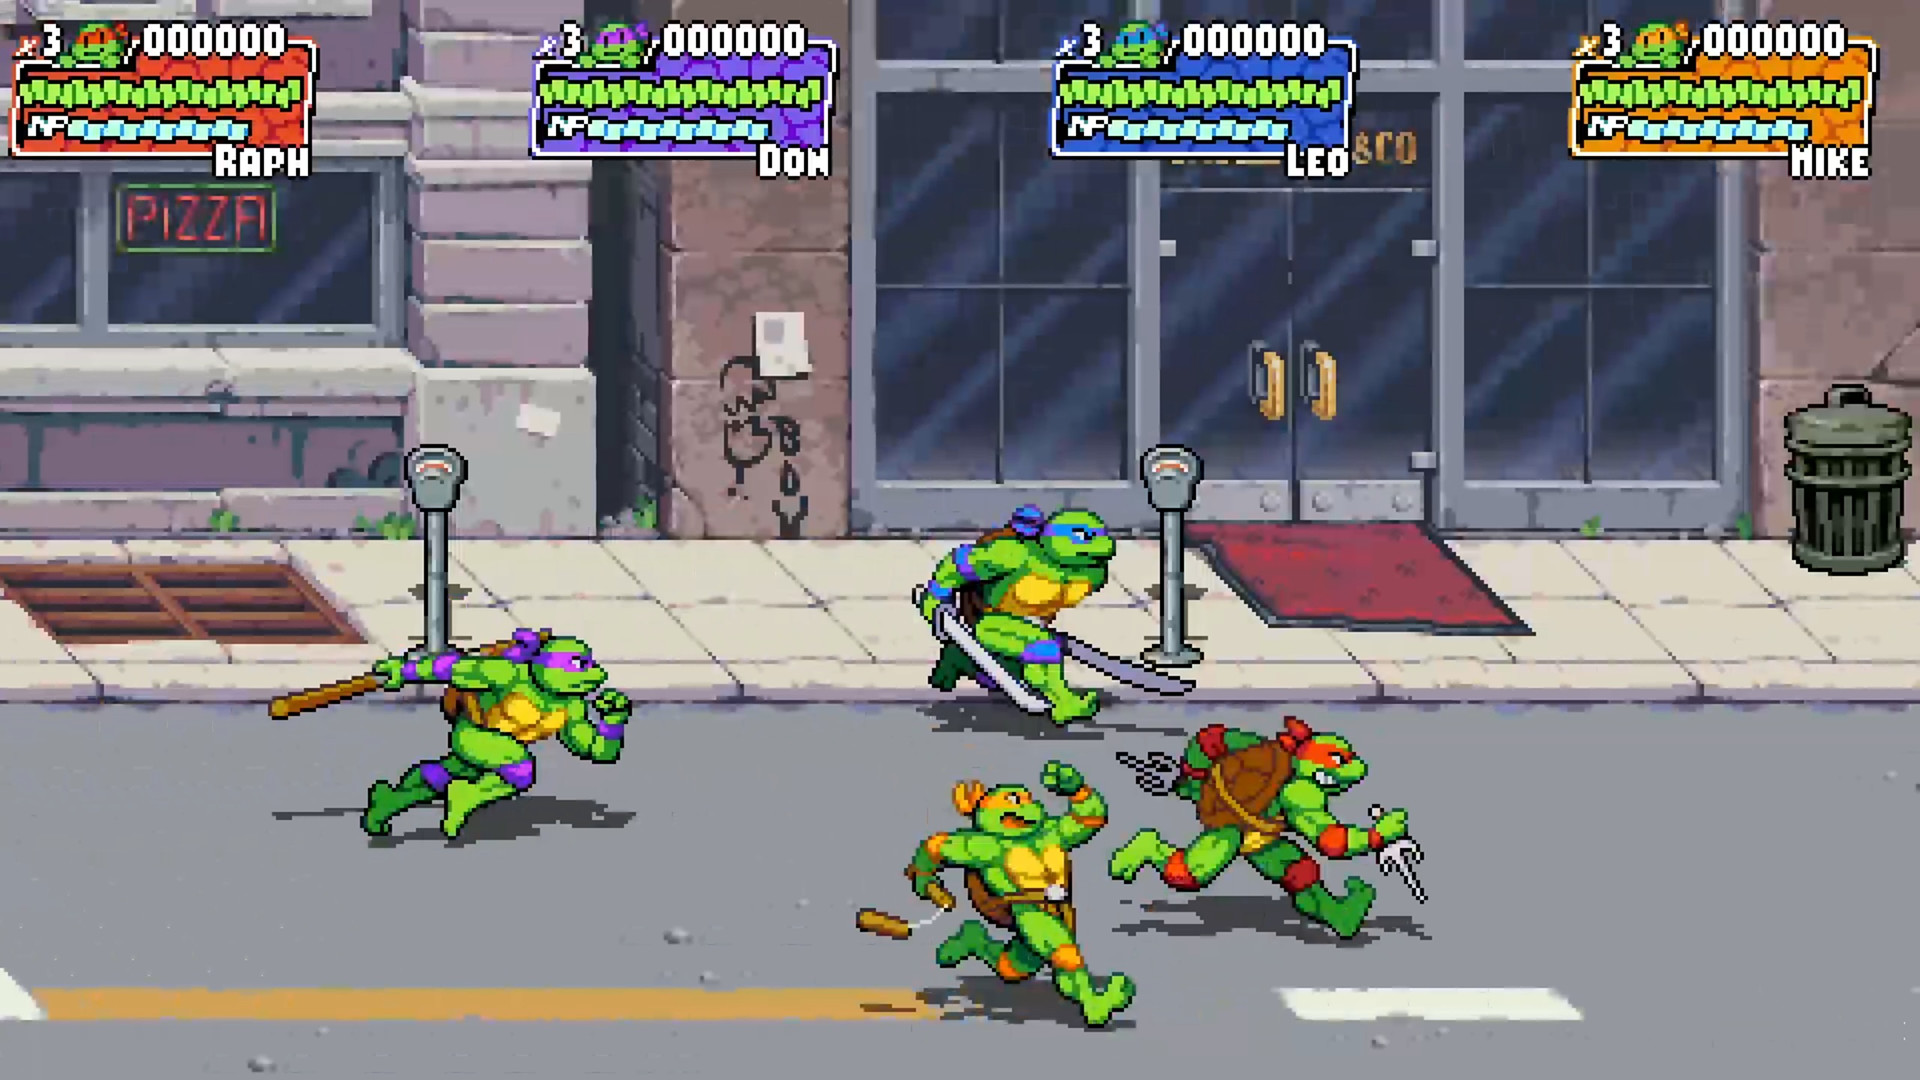 Teenage Mutant Ninja Turtles: Shredder's Revenge on Steam